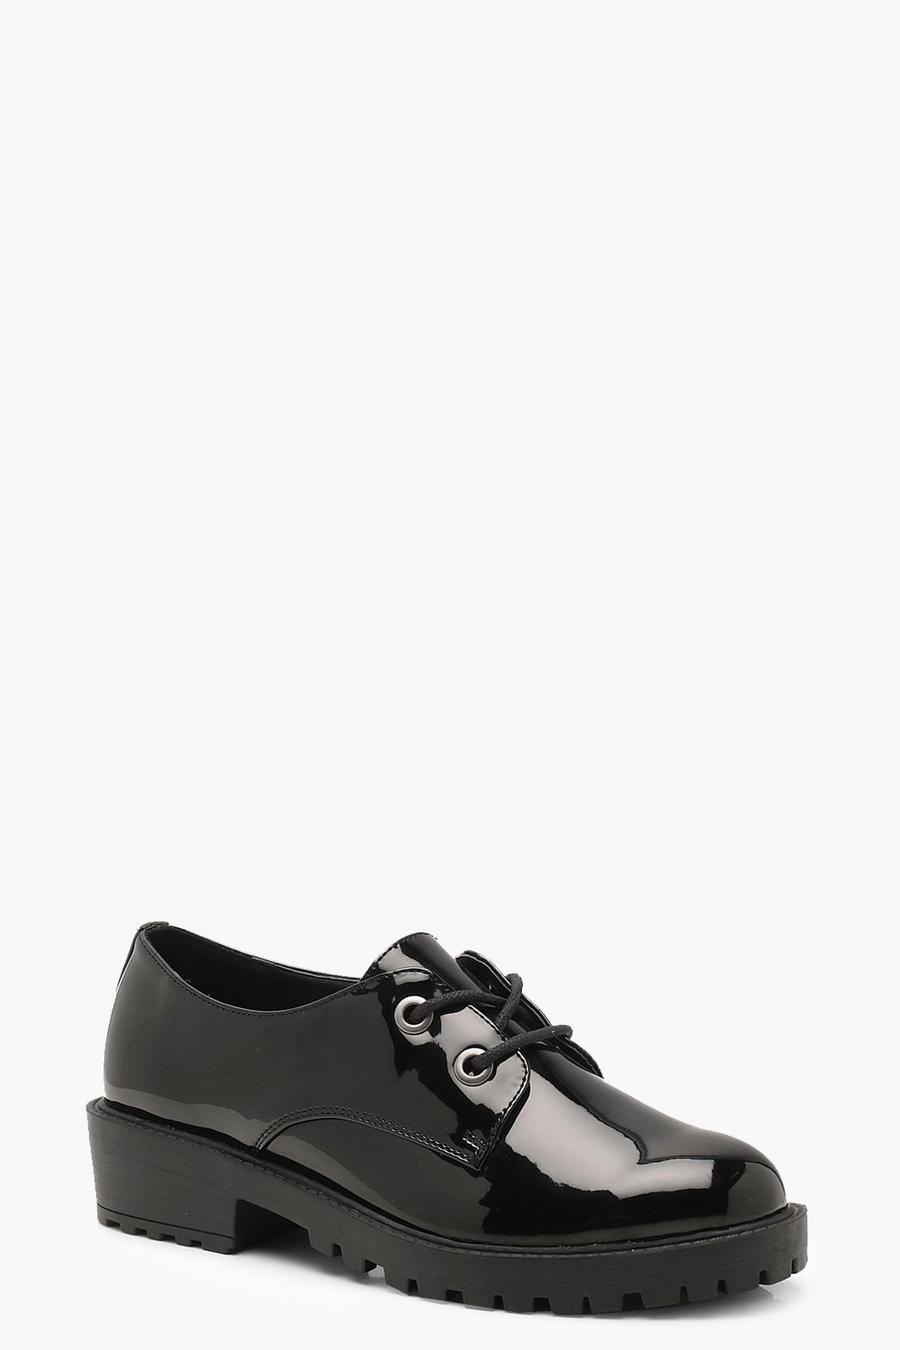 Zapatos de cuero calado robustos con cordones, Negro image number 1